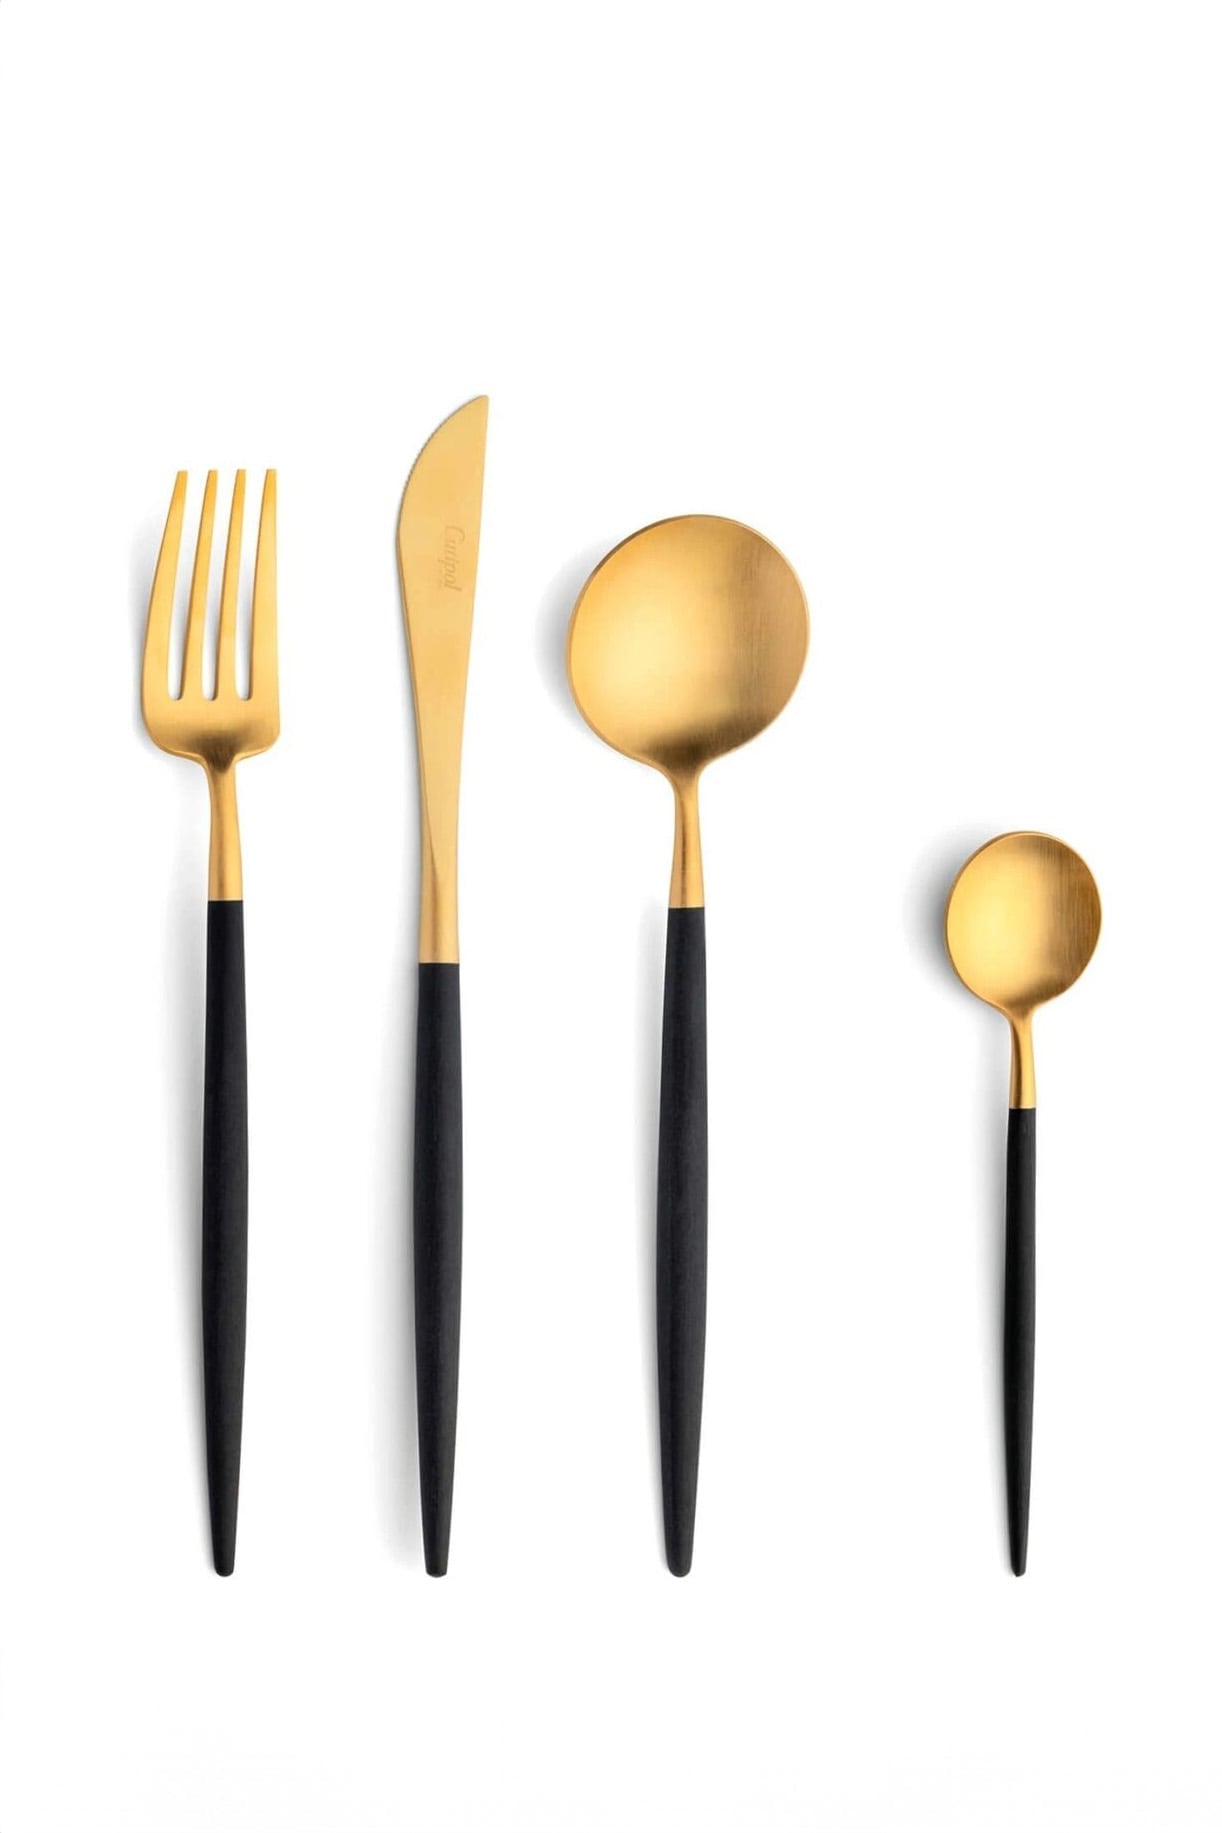 Cutipol Goa Gold Cutlery (Black)